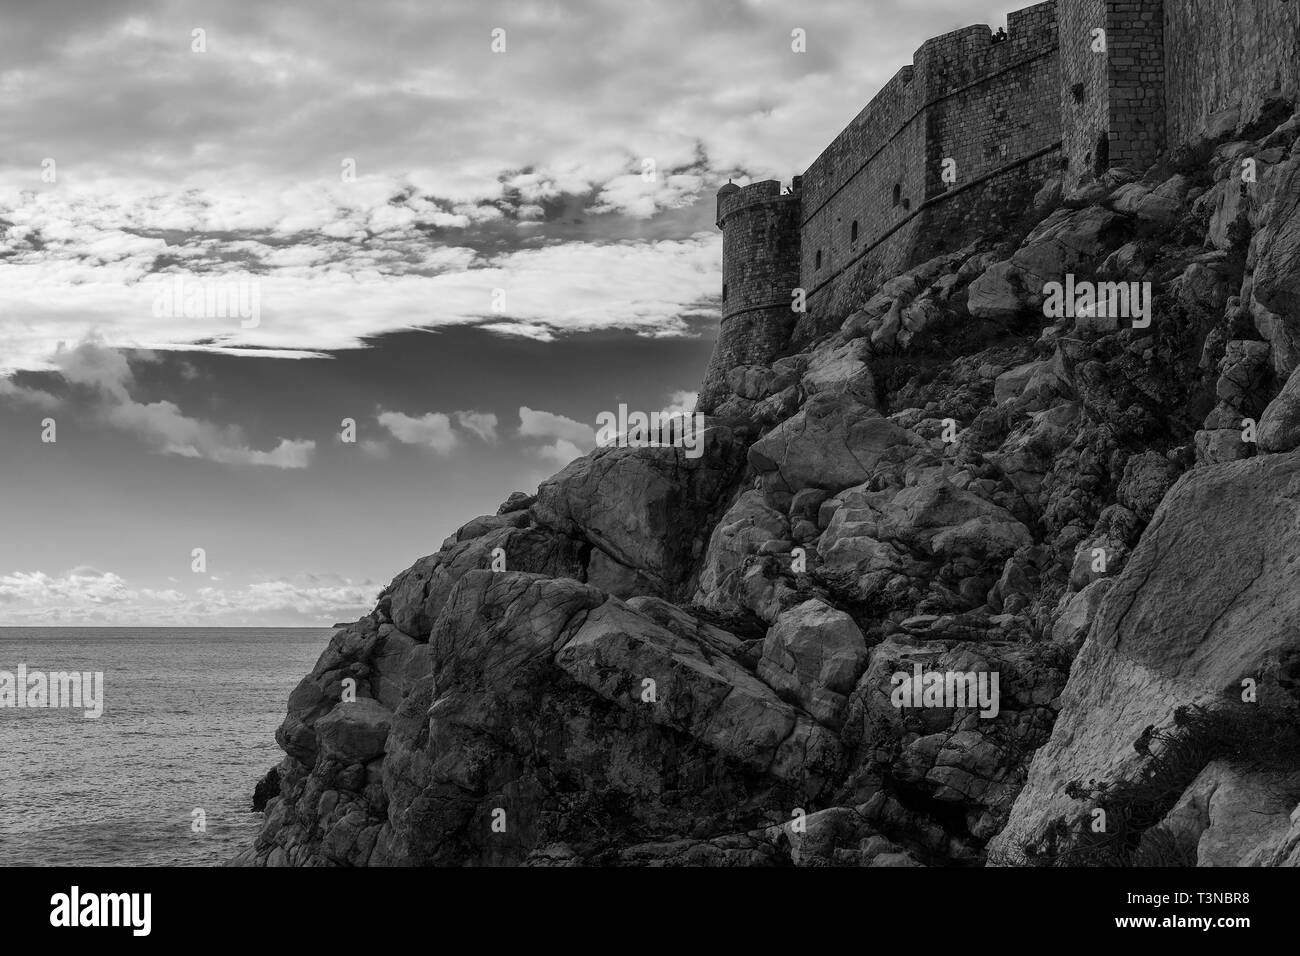 Sv Petar tour et remparts de la ville, Stari grad, Dubrovnik, Croatie, du 2 bar. Buža Version noir et blanc Banque D'Images